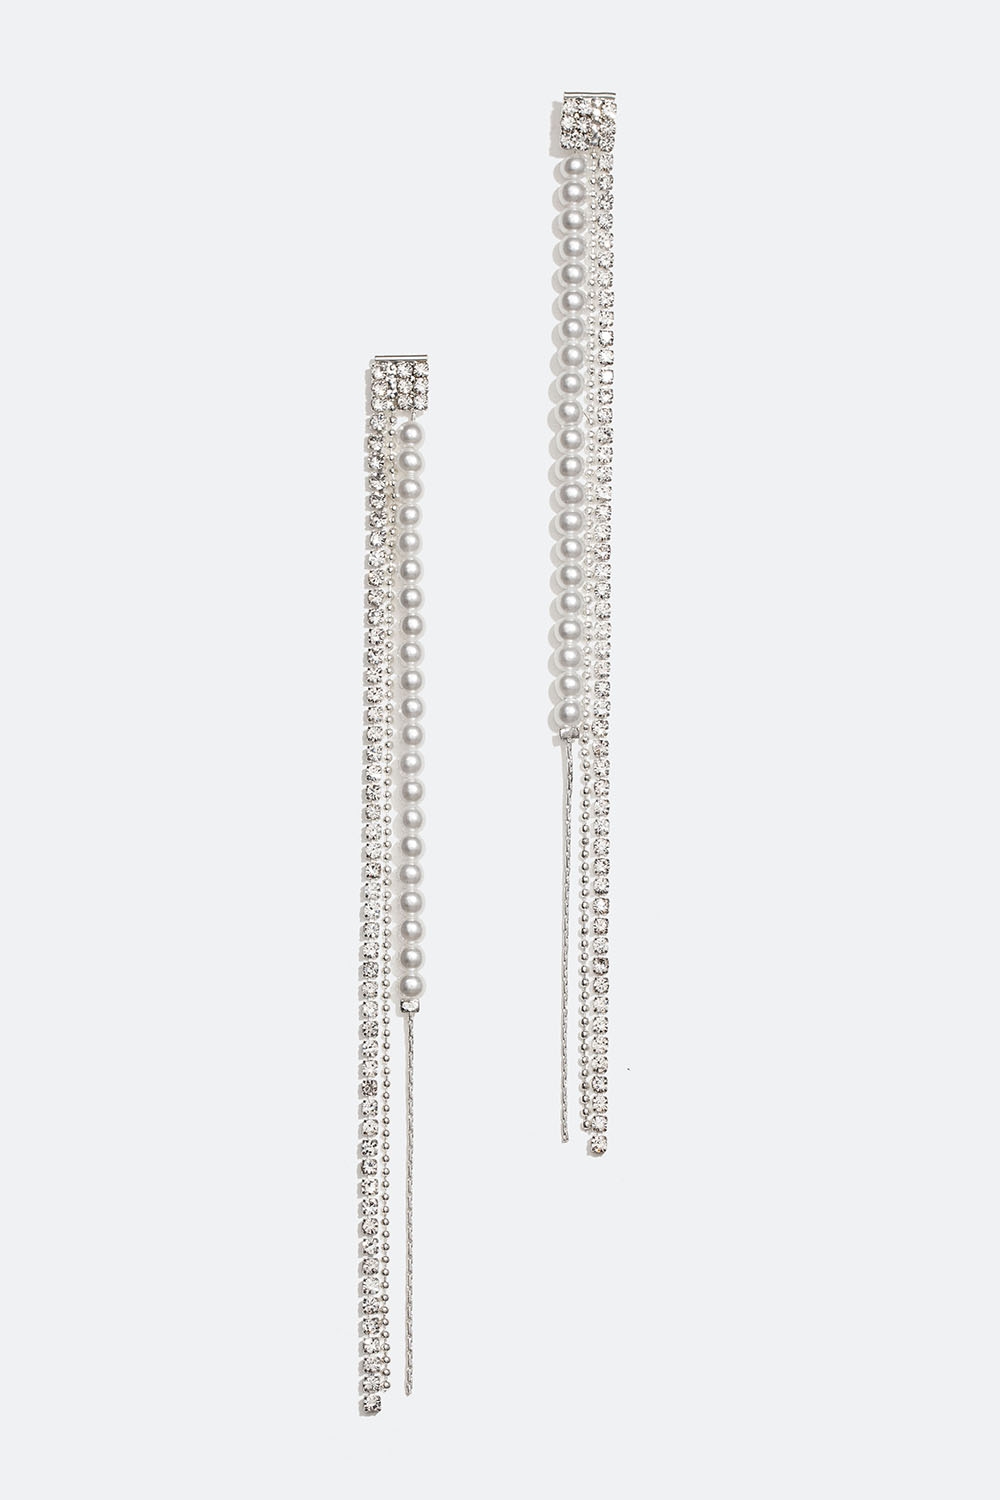 Pitkät korvakorut, joissa on helmiä ja lasikiviä ryhmässä Korut / Korvakorut @ Glitter (253005900201)